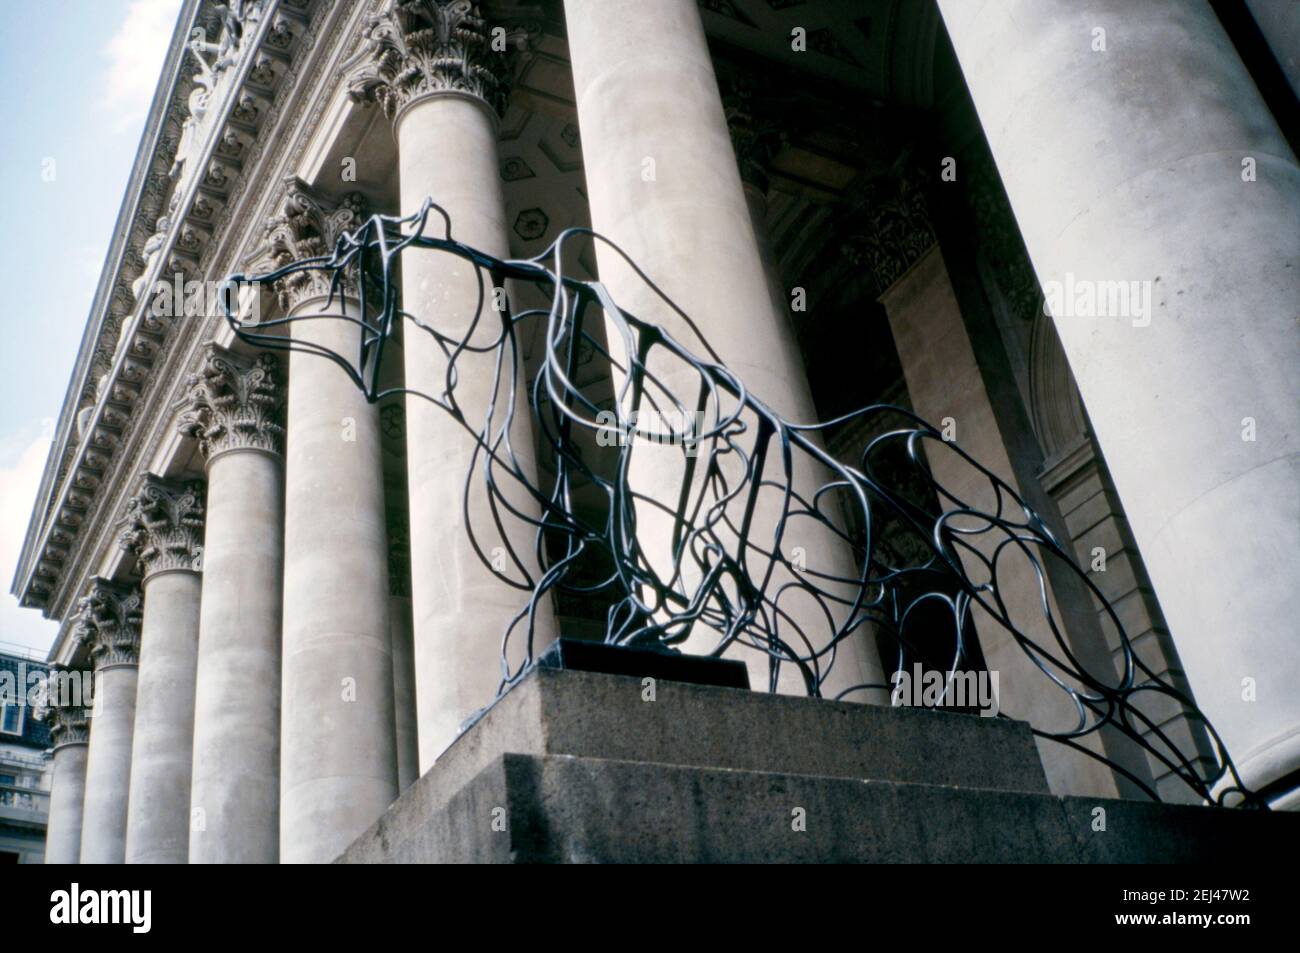 Une sculpture en acier de 1993, « Ours » de Marcel Baettig, dans la ville de Londres, Angleterre, Royaume-Uni 1993. Cette œuvre faisait partie de l’« Art in the City » de 1993 et visait à faire de la sculpture une place parmi les espaces verts et l’architecture distinctive de la City de Londres. Les deux mots Bull et Bear sont des mots étroitement liés au marché boursier de Londres. Marcel Baettig a fondé l’entreprise sociale « Bow Arts » en 1995, créant un modèle durable de soutien aux artistes et à l’éducation artistique. Banque D'Images